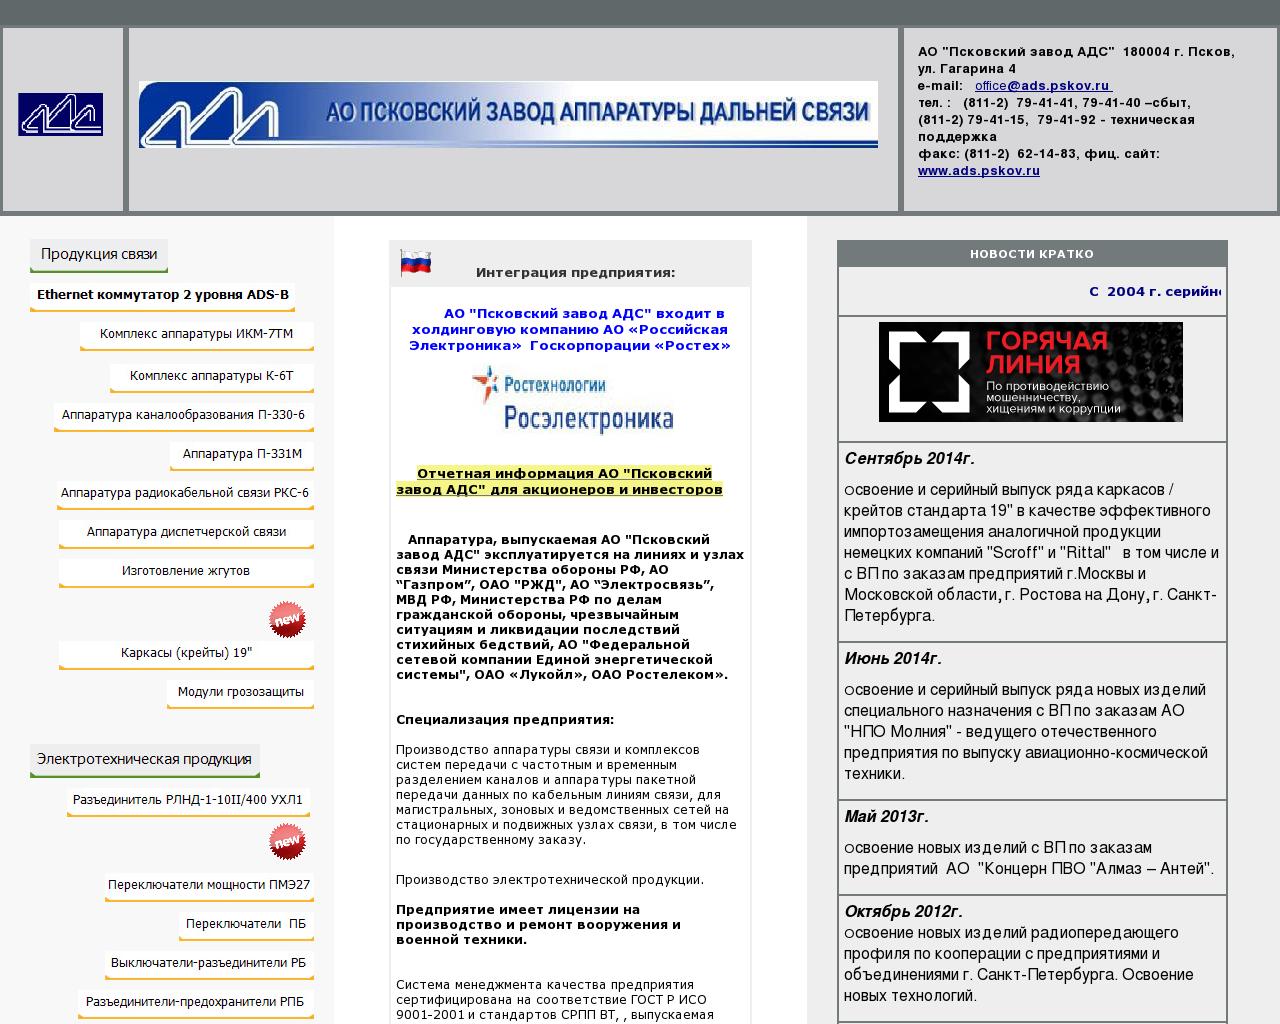 Изображение сайта ads-pskov.ru в разрешении 1280x1024